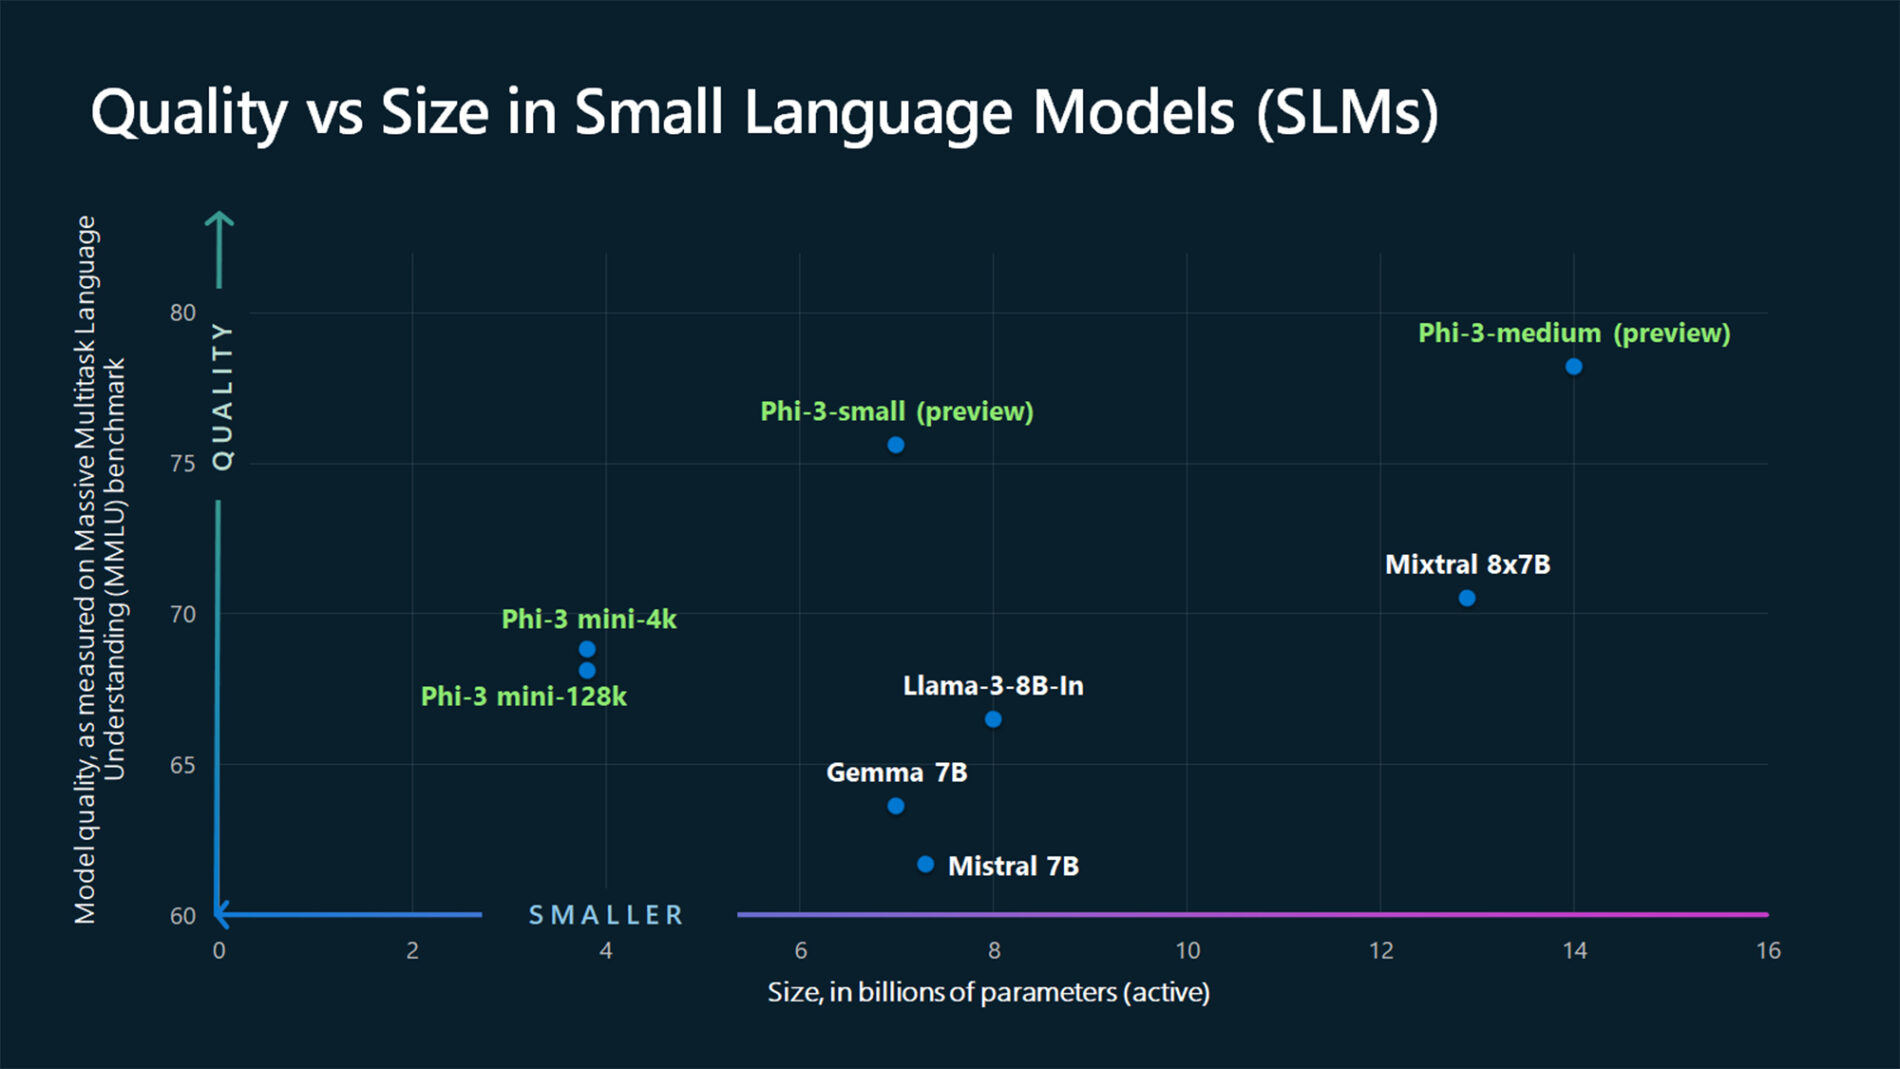 Gráfico que ilustra cómo se compara la calidad de los nuevos modelos Phi-3, medida por el rendimiento en el punto de referencia Massive Multitask Language Understanding (MMLU), con otros modelos de tamaño similar